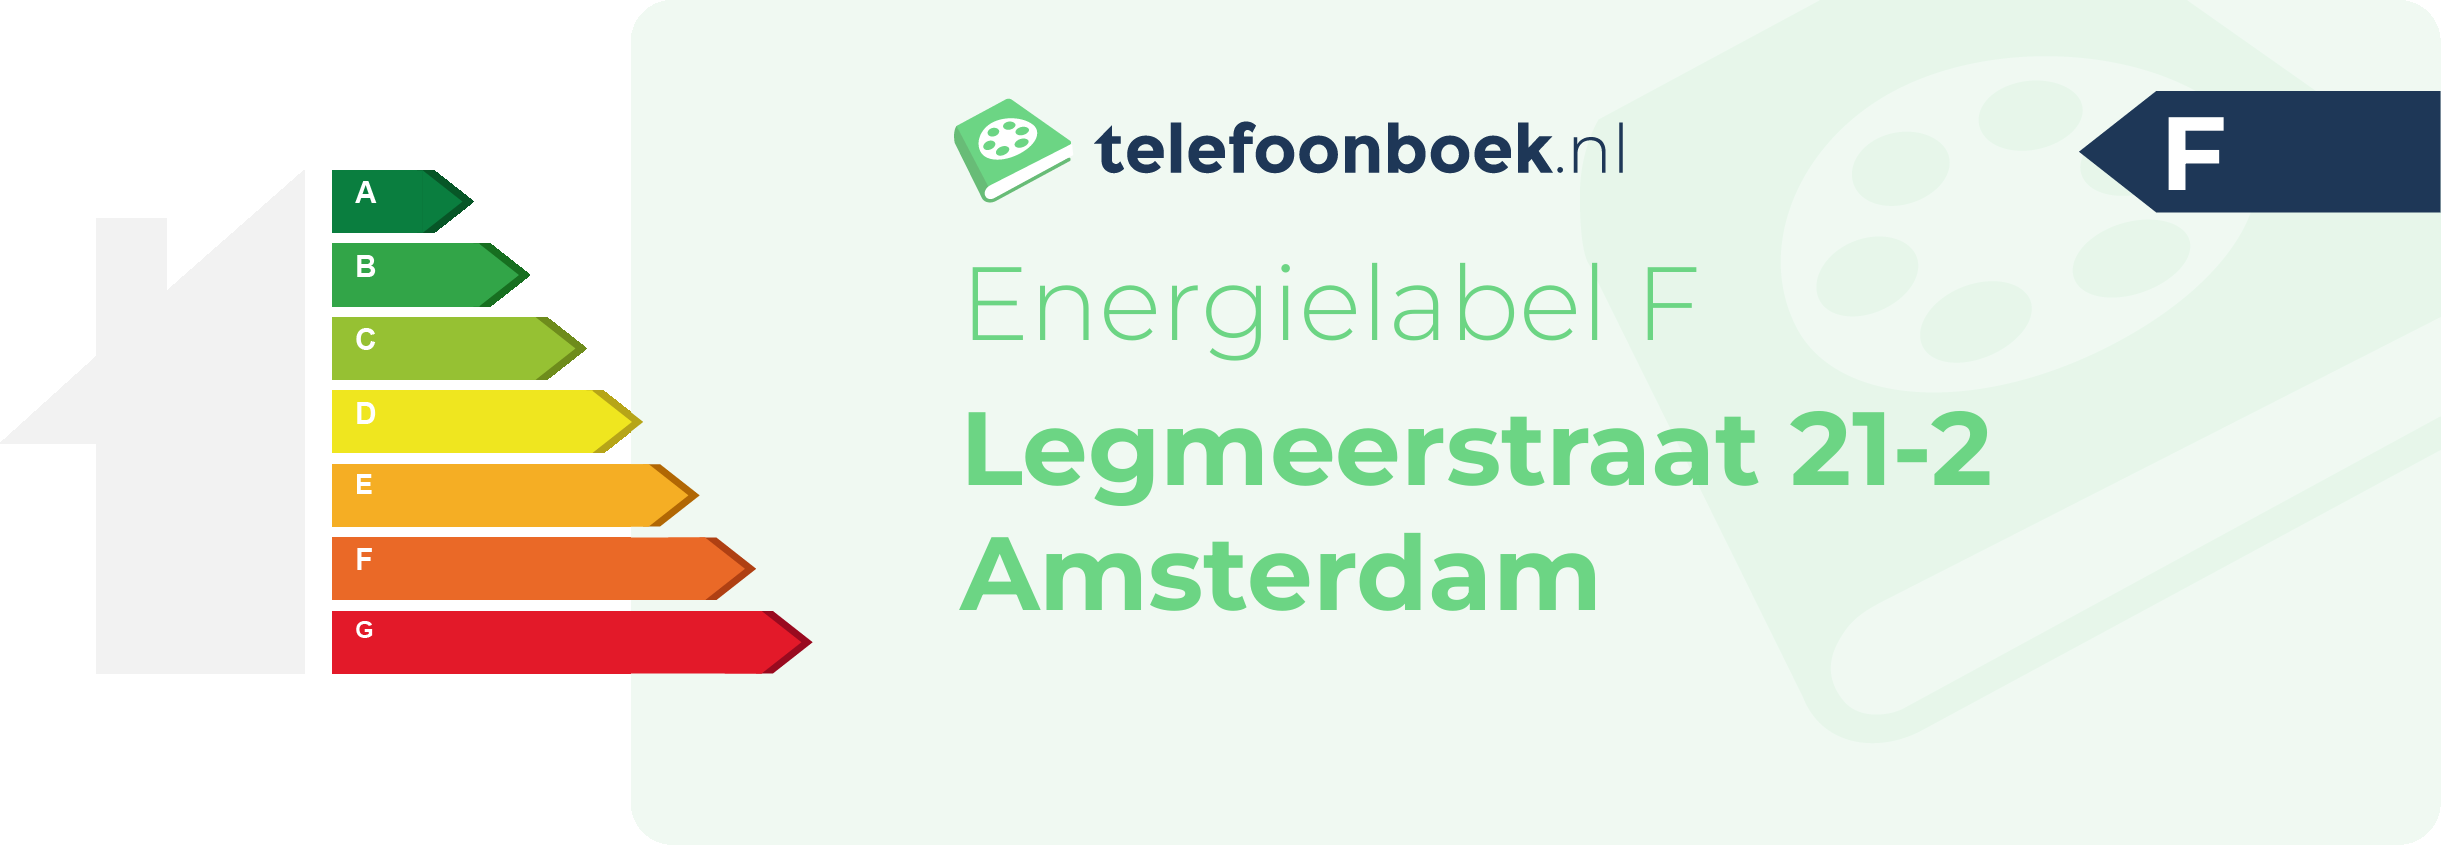 Energielabel Legmeerstraat 21-2 Amsterdam